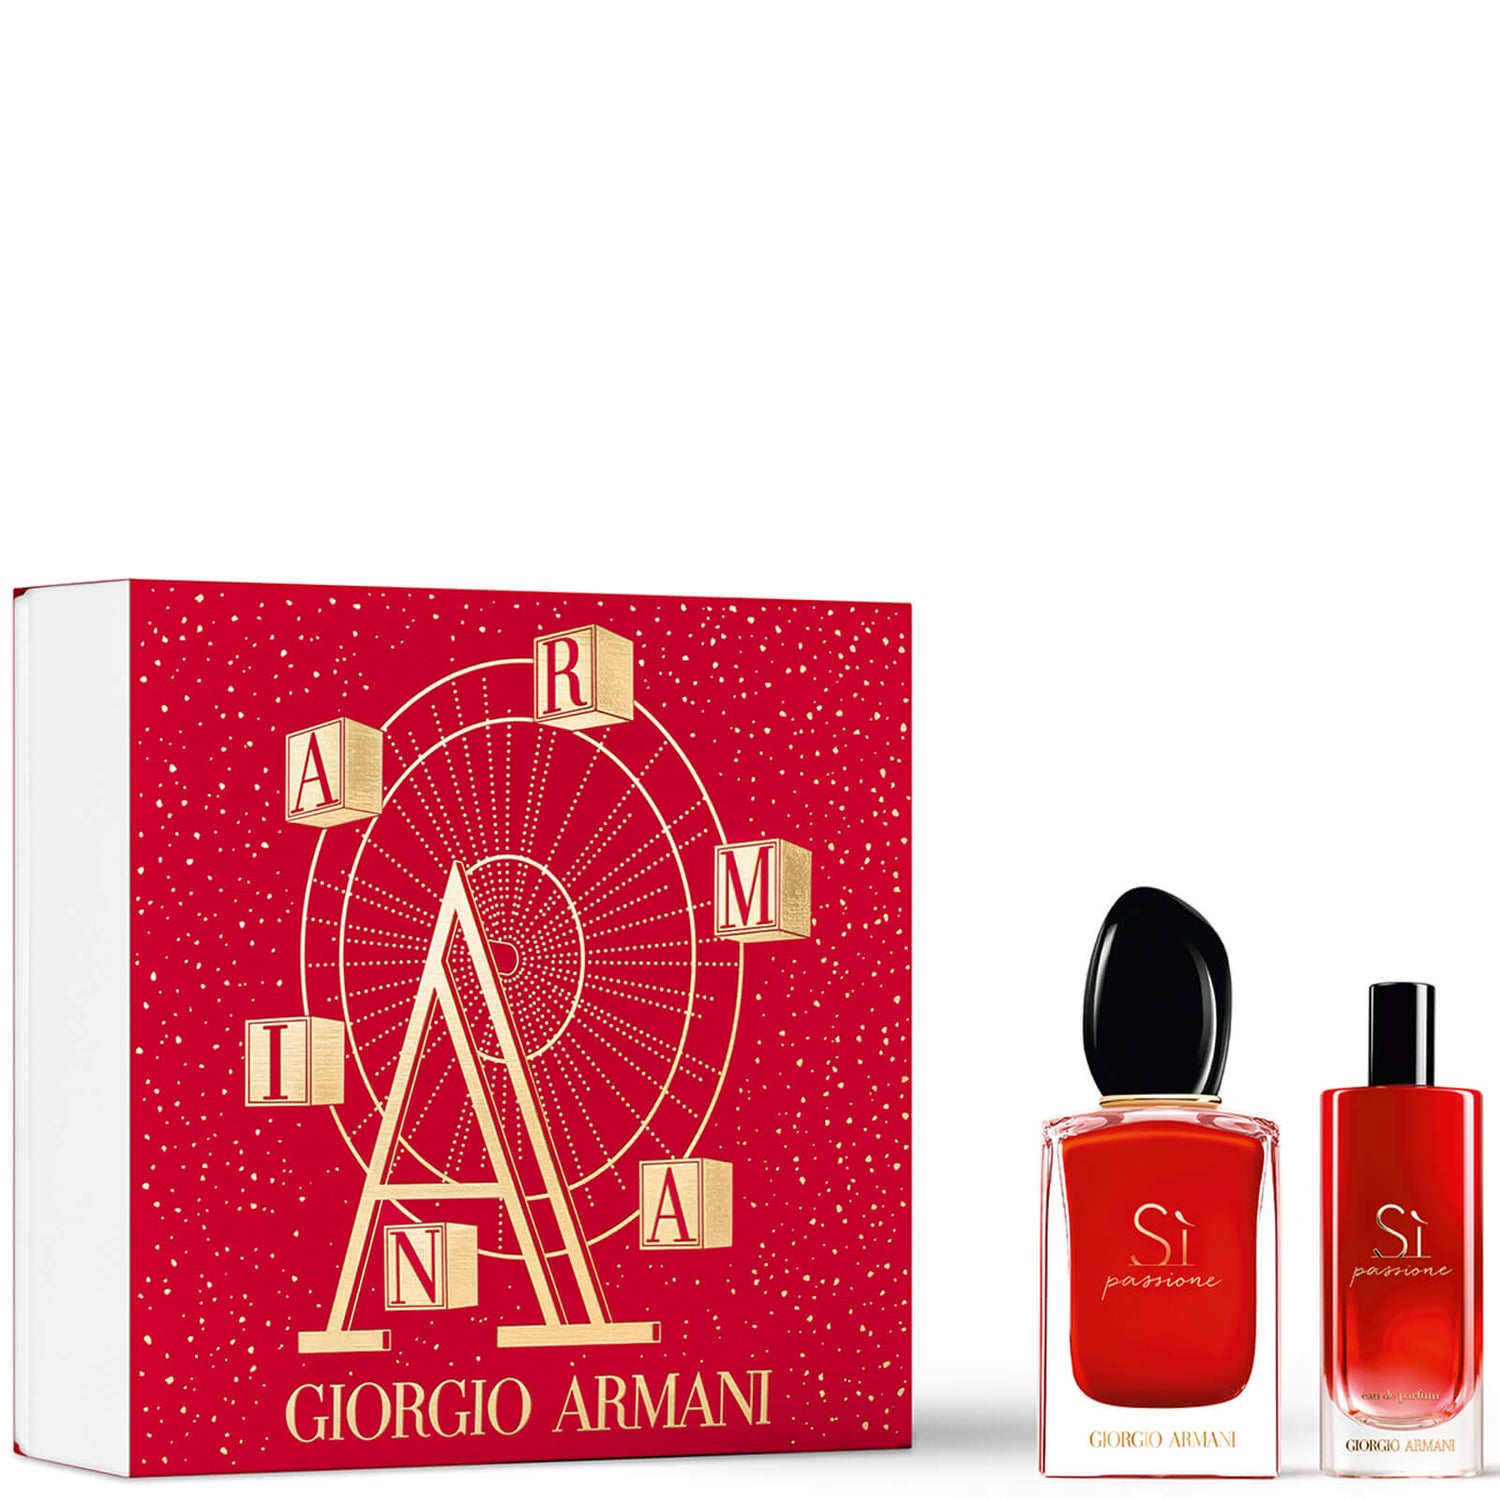 Armani Si Passione Eau De Parfum Gift Set for Her